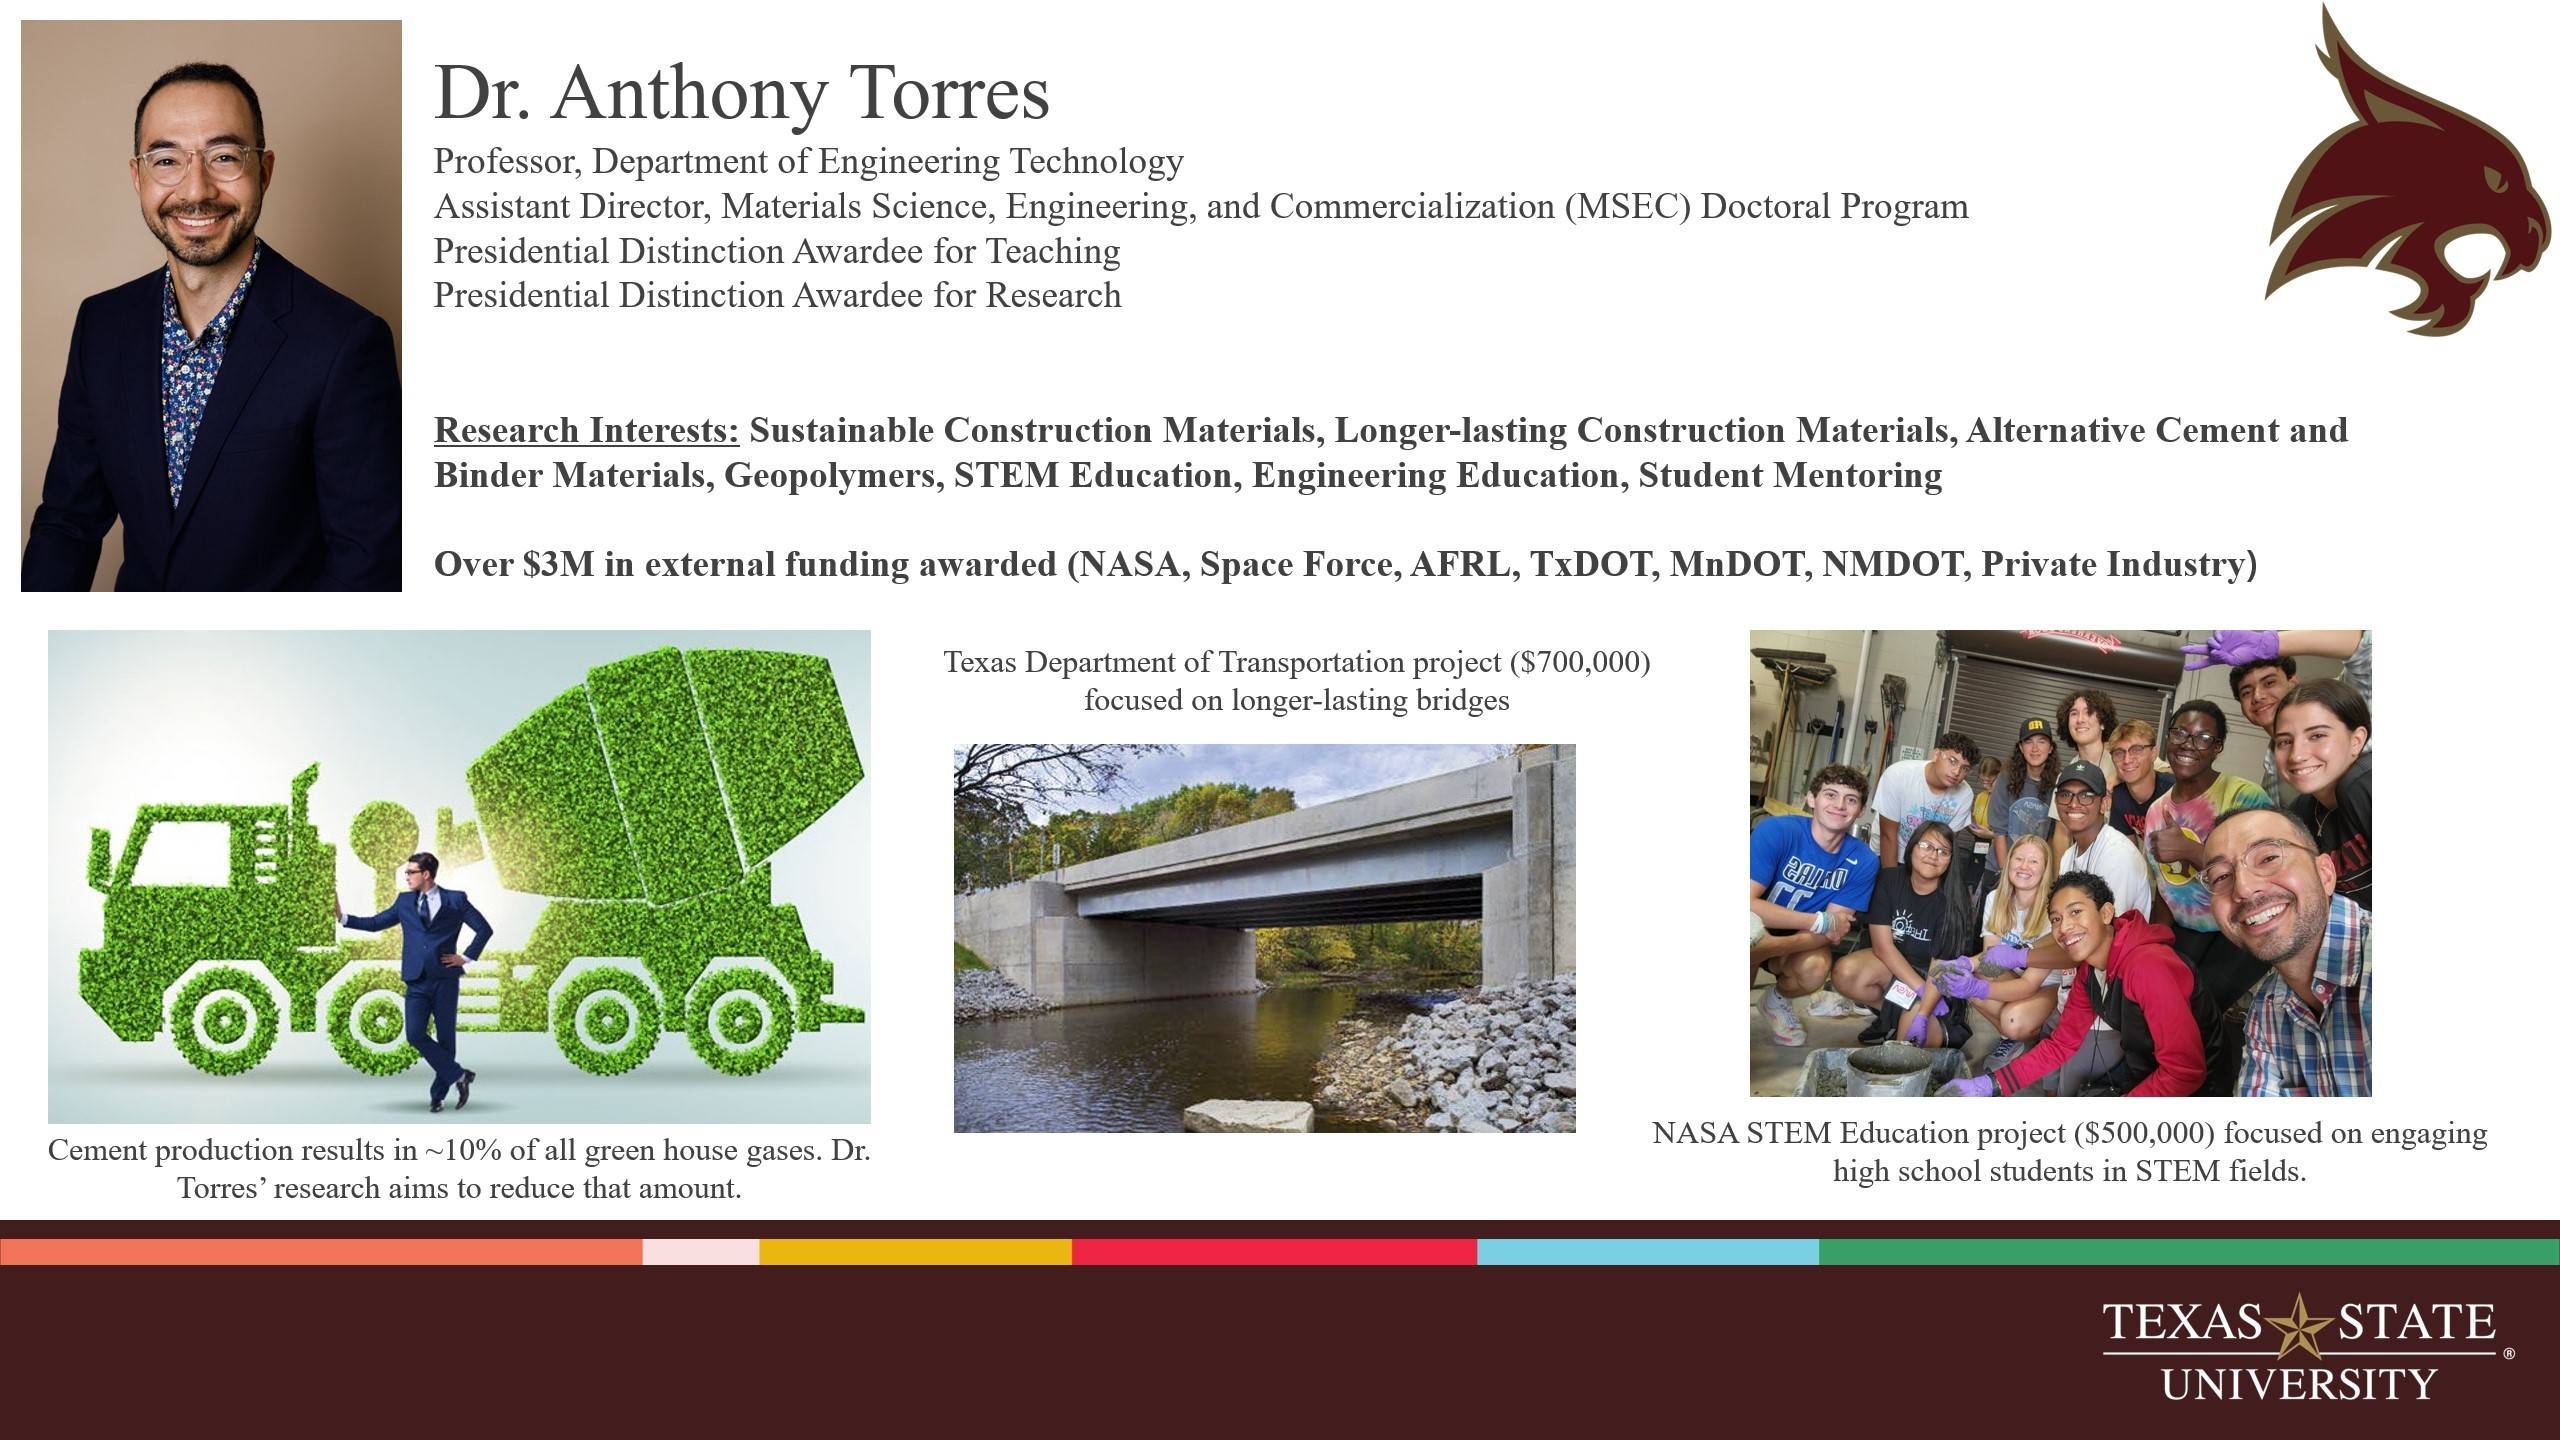 Dr. Anthony Torres